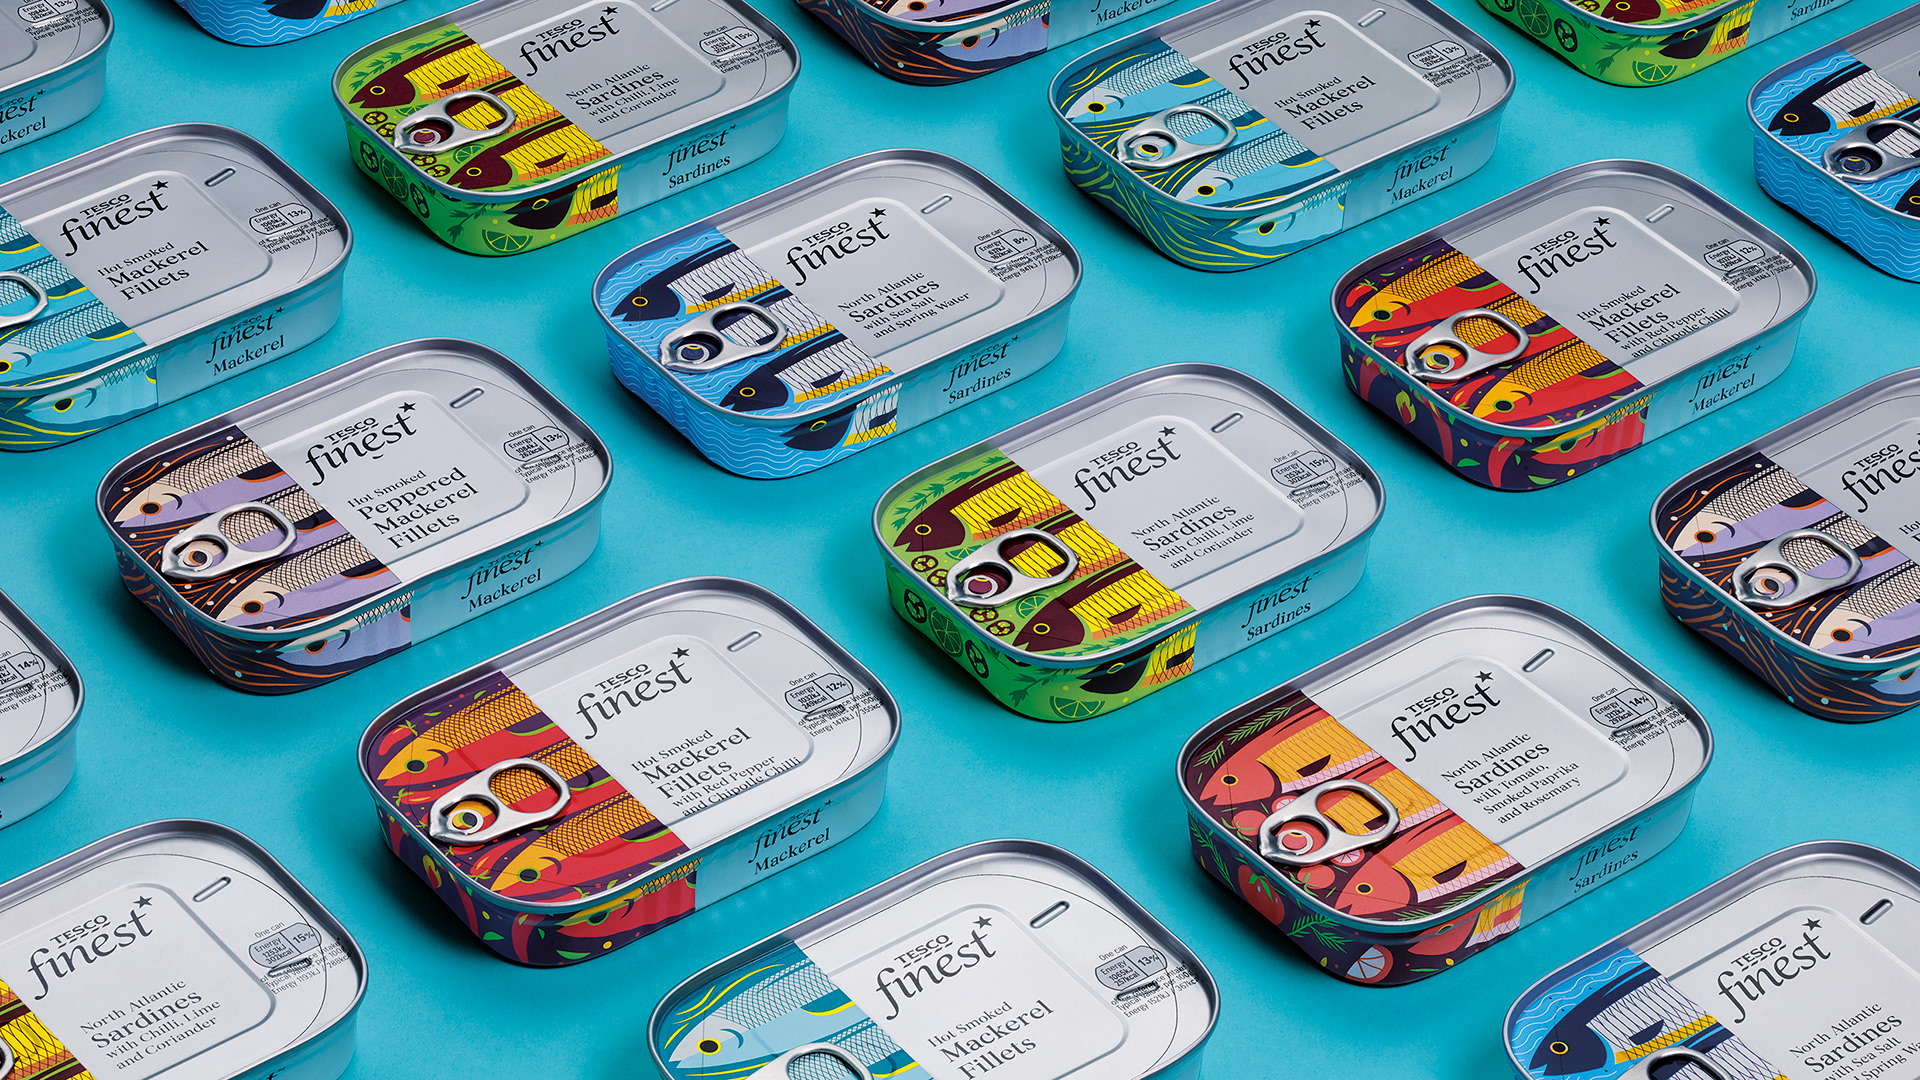 鱼罐头包装设计 鱼罐头包装设计公司哪家好 鱼罐头包装设计公司 第1张